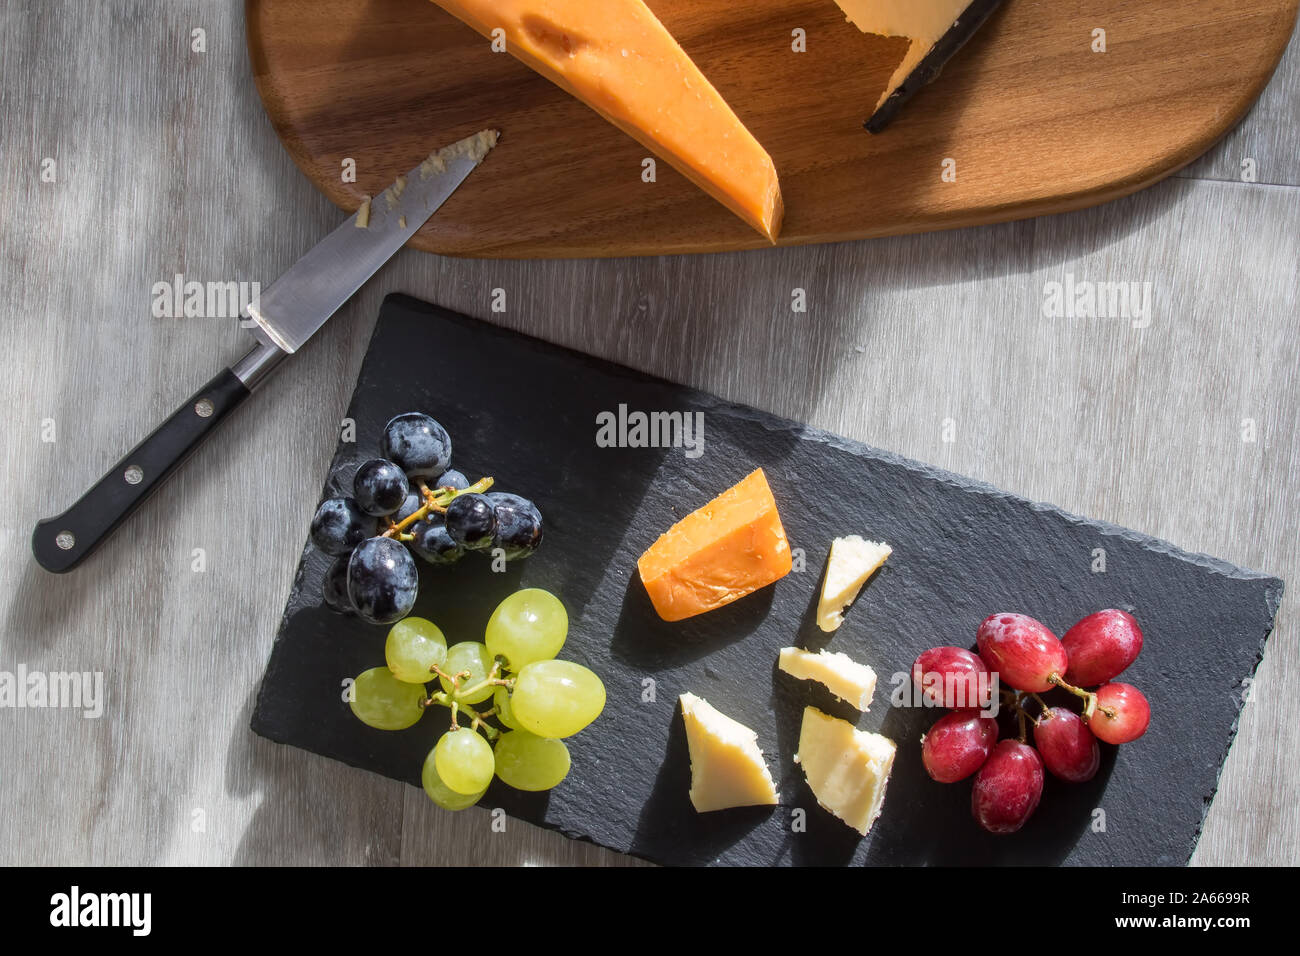 Sélection de fromage servi avec rouge blanc et noir raisin. Flatlay Snack food image. Leicester et cheddar fromages avec fruits servis sur le bois et sl Banque D'Images